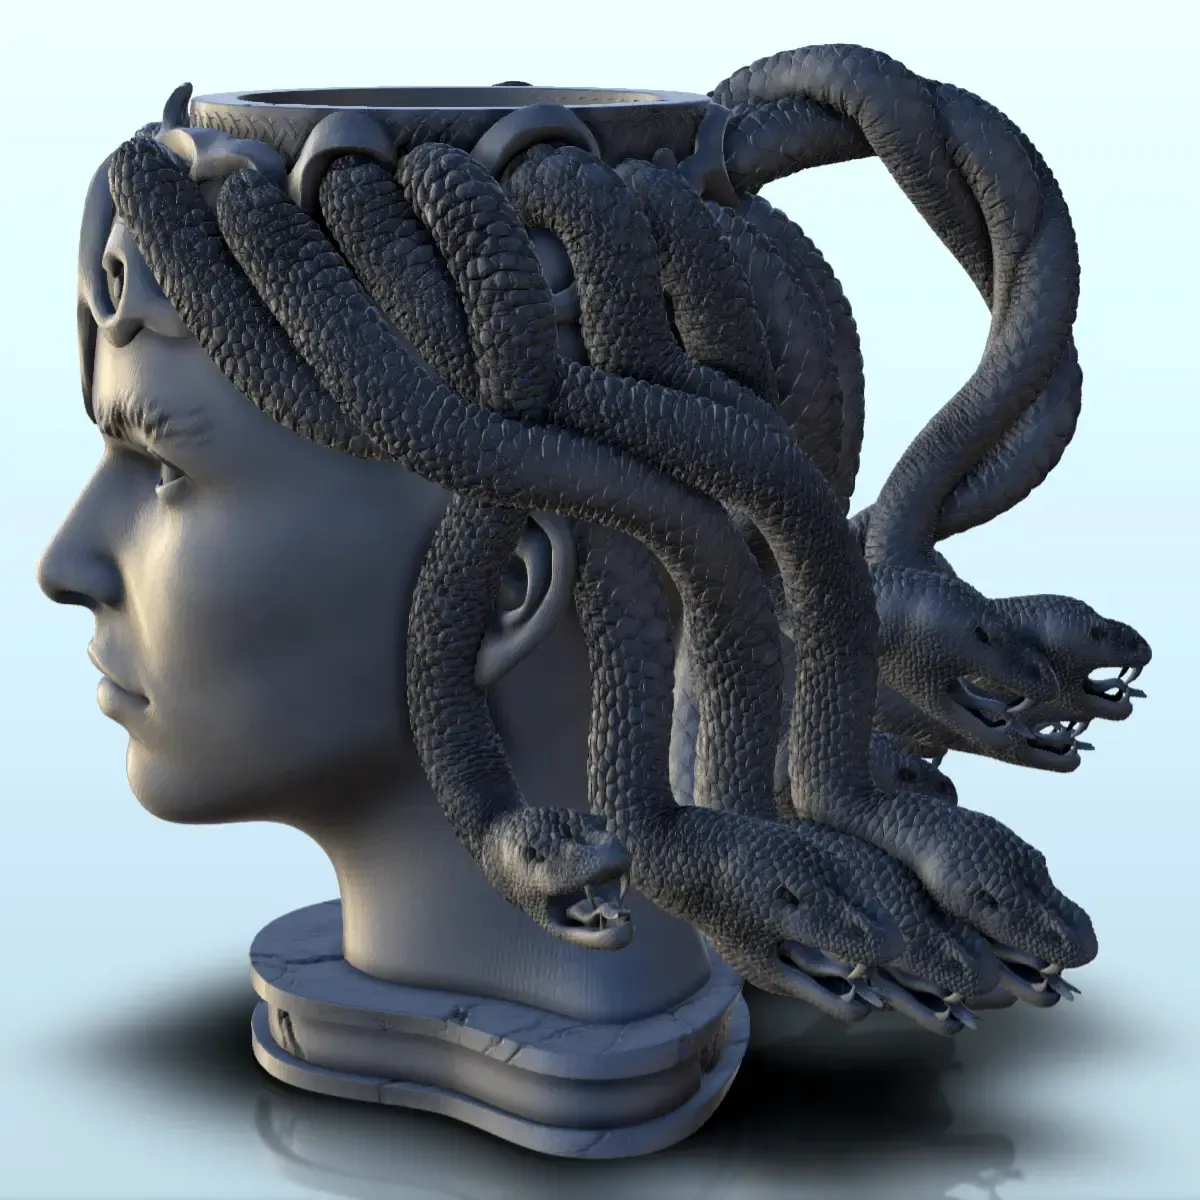 Medusa dice mug (19) - beer can holder